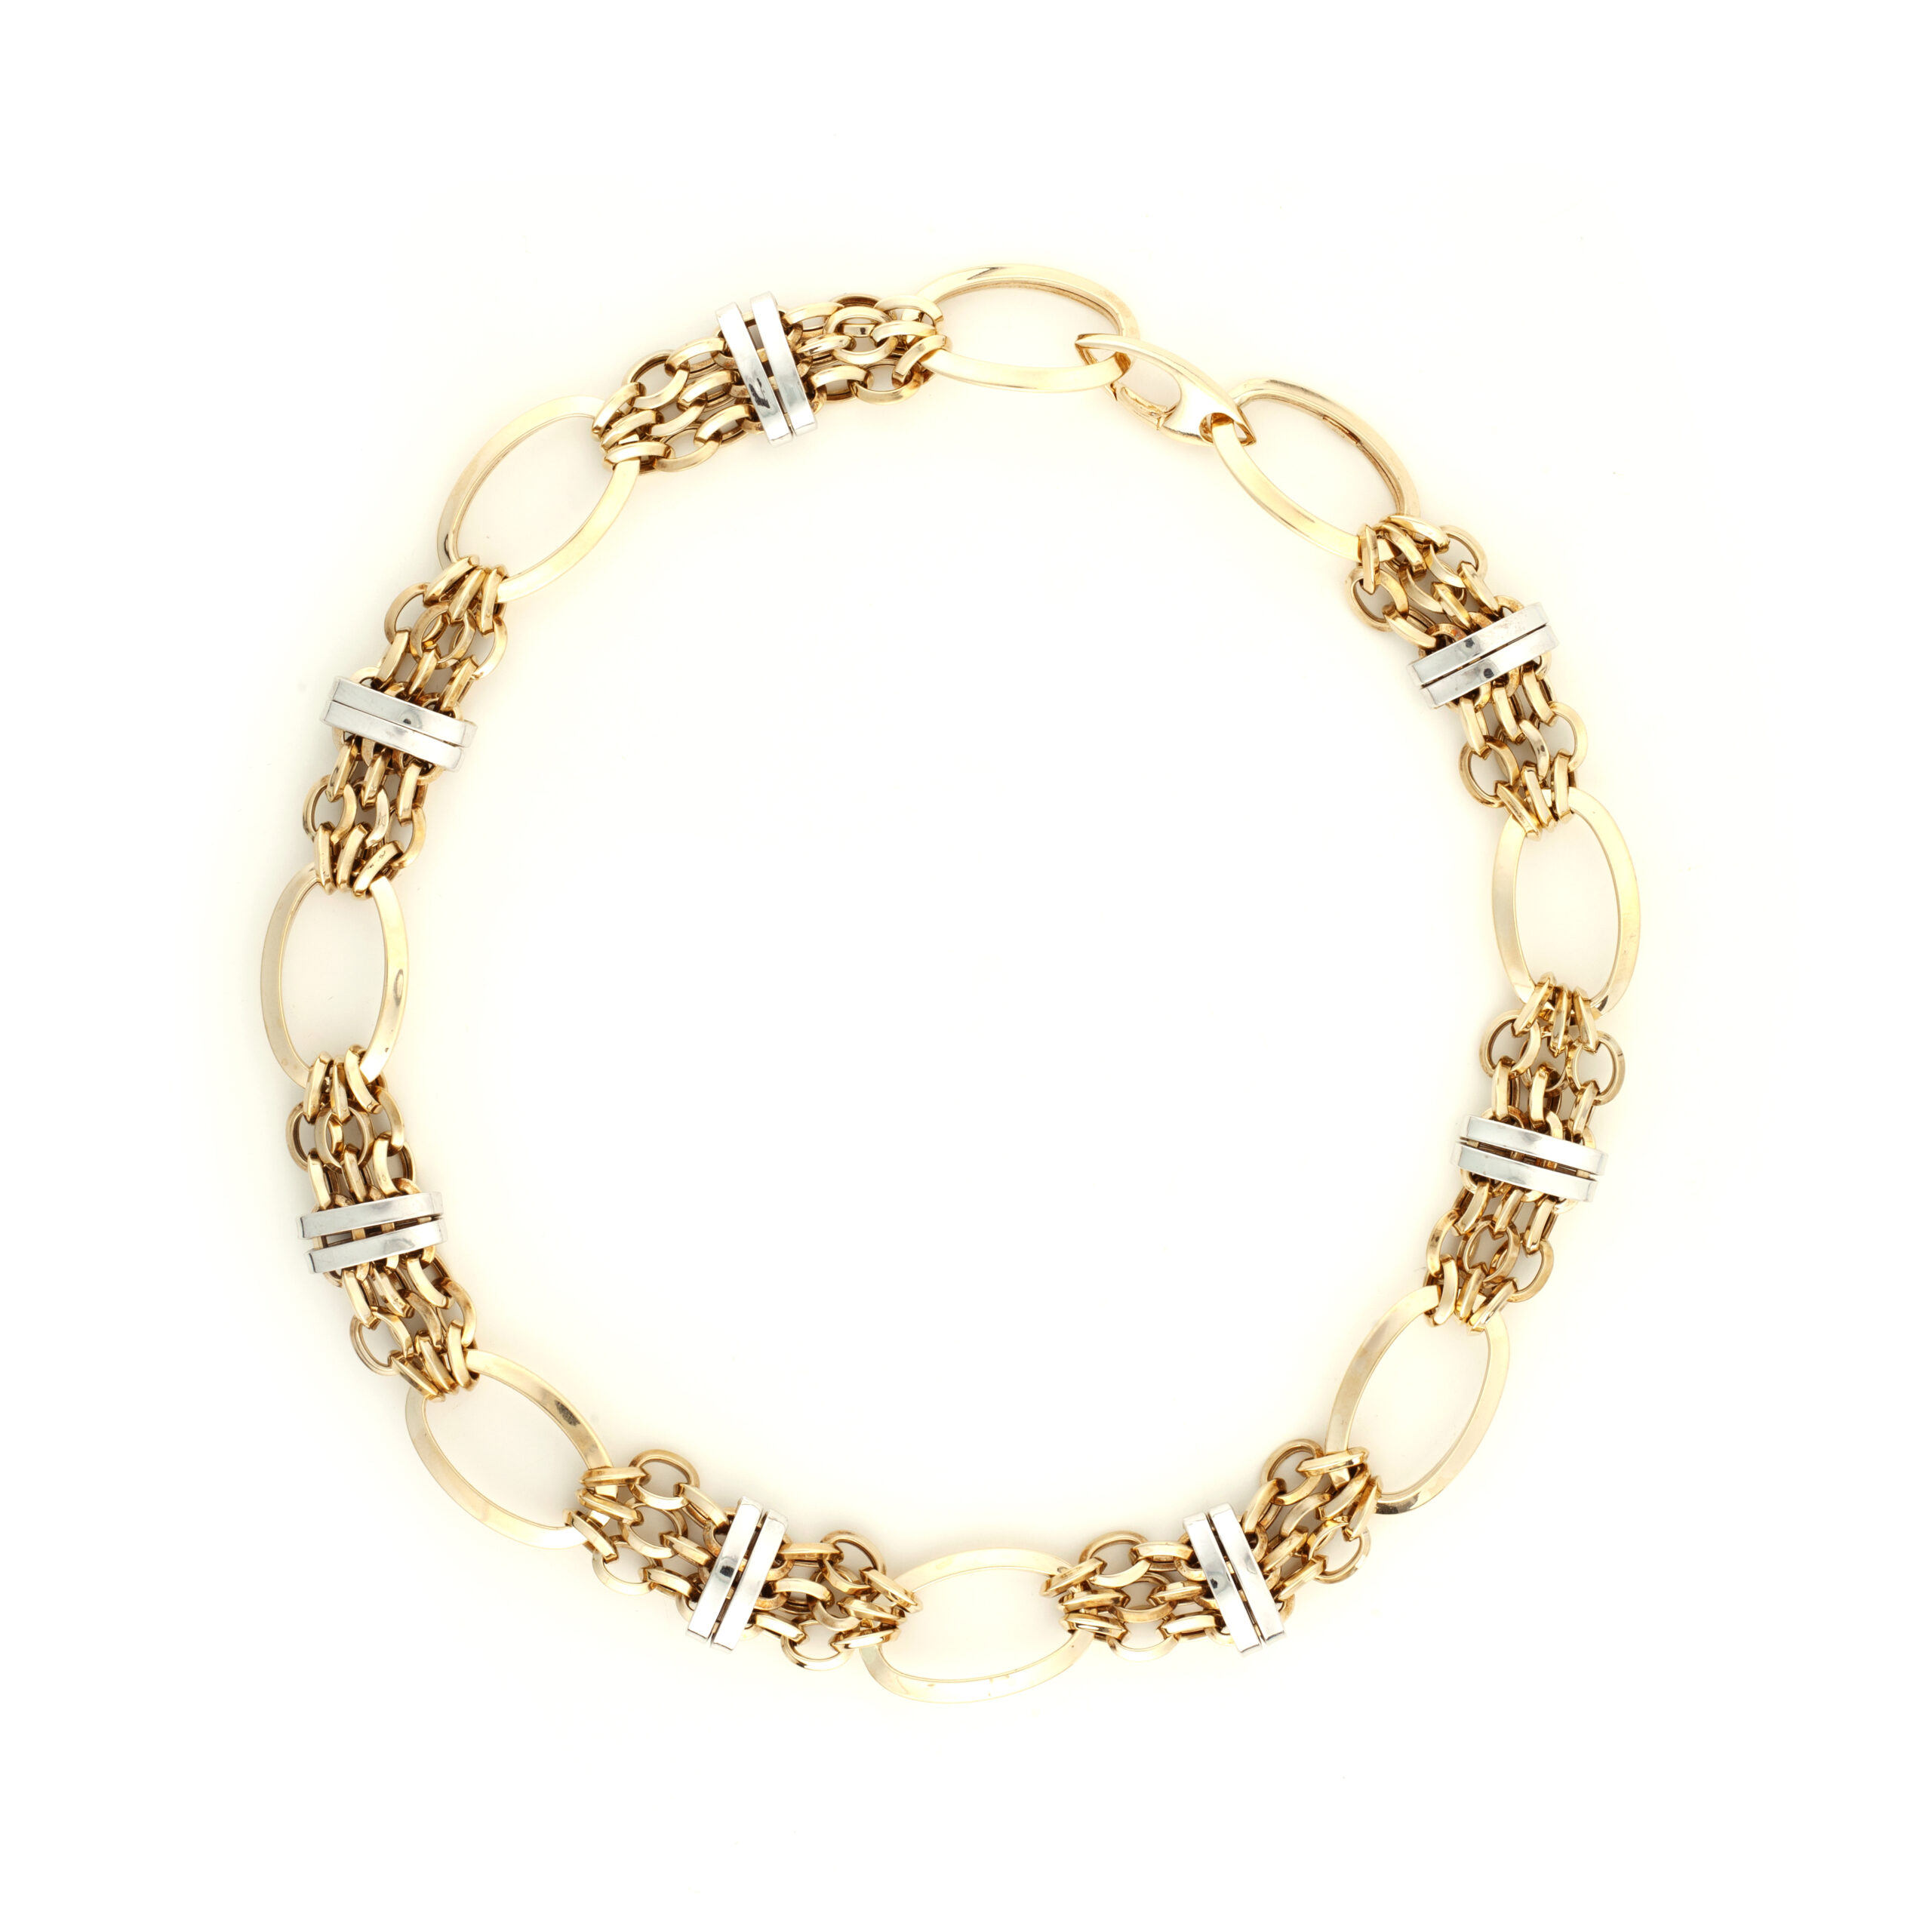 Περιδέραιο αλυσίδα σε συνδυασμό κίτρινου και λευκού χρυσού Κ14 με λουστρέ φινίρισμα rich necklace